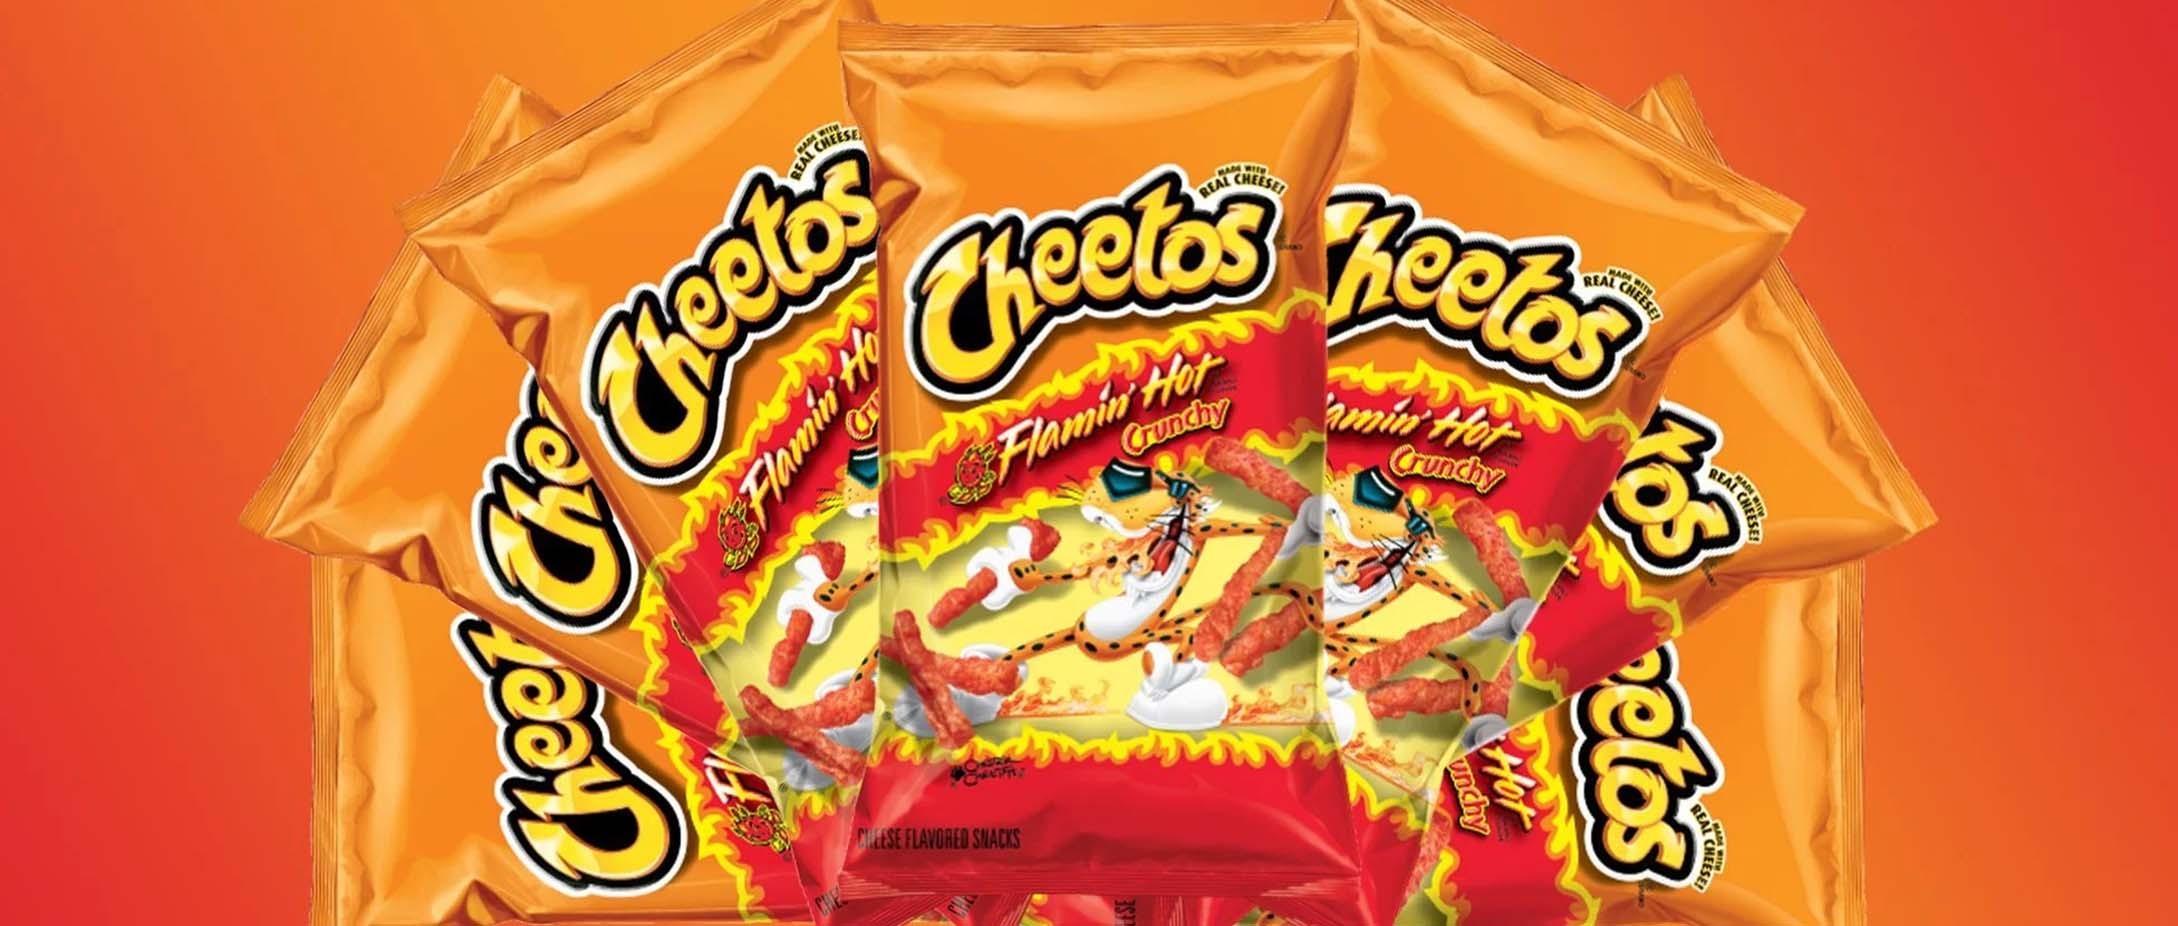 La marque de chips la plus populaire des États-Unis : Cheetos 🧀